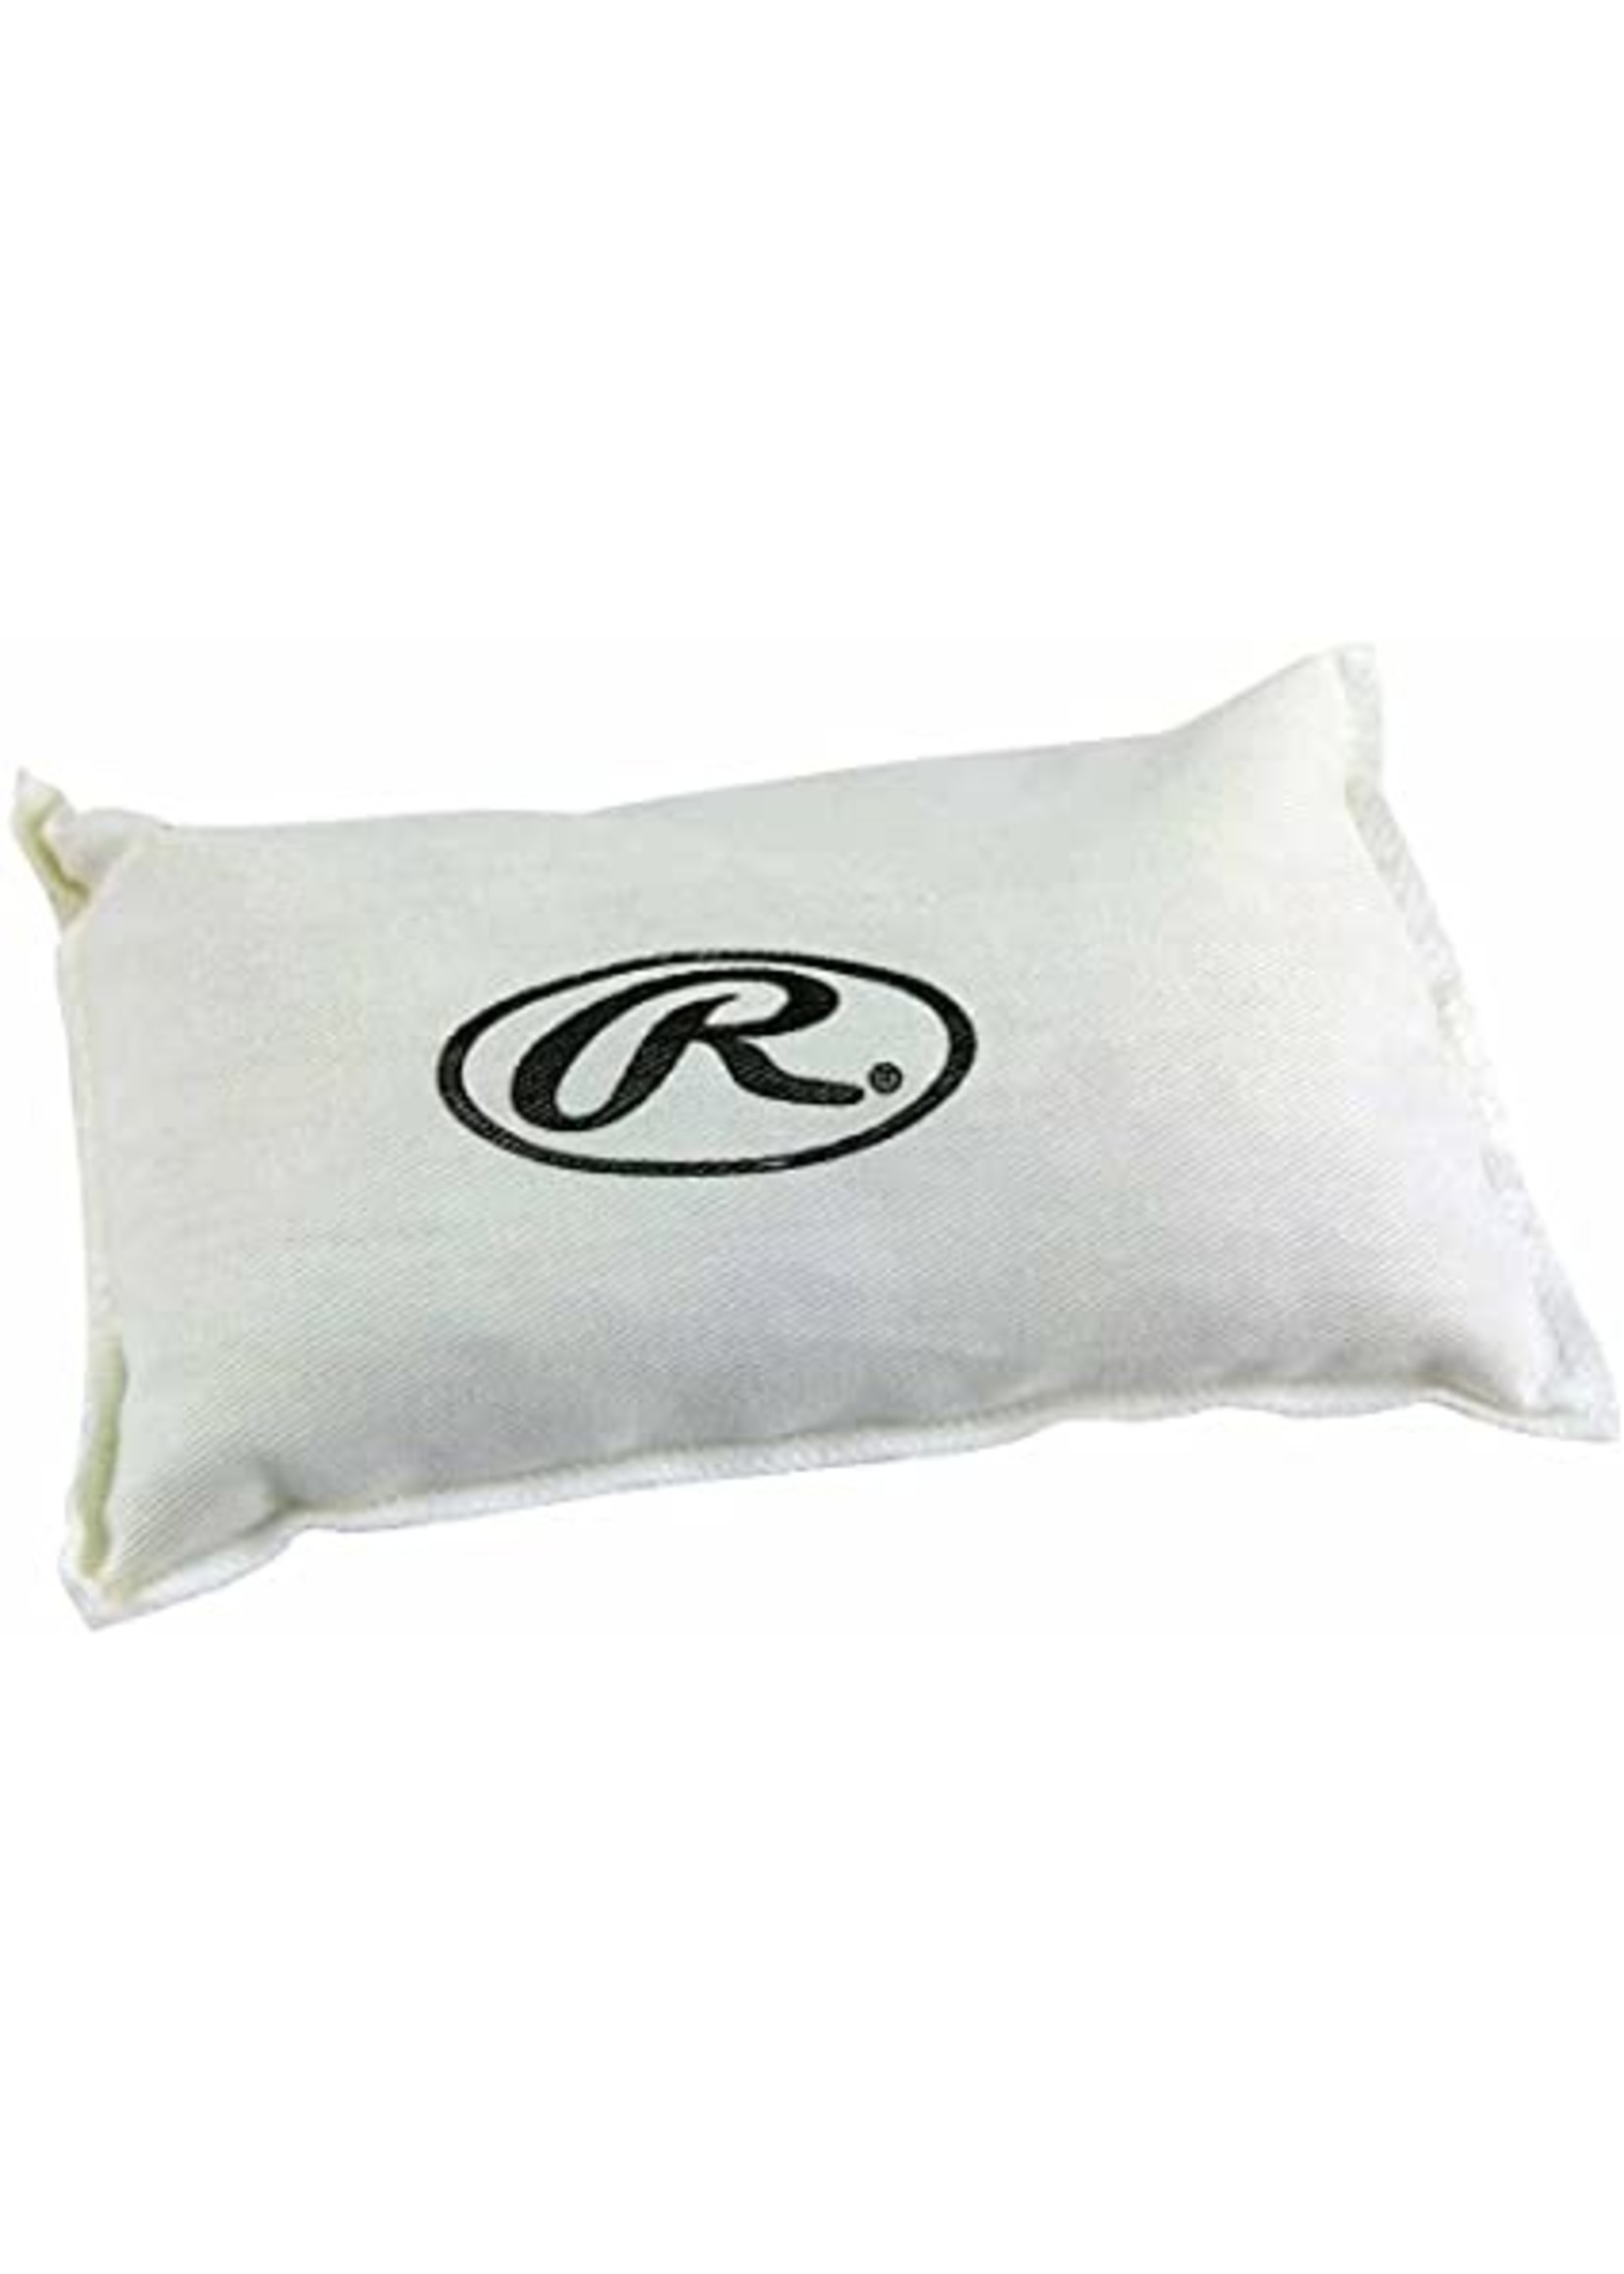 Rawlings Rawlings Small Rosin Bag (dry grip)